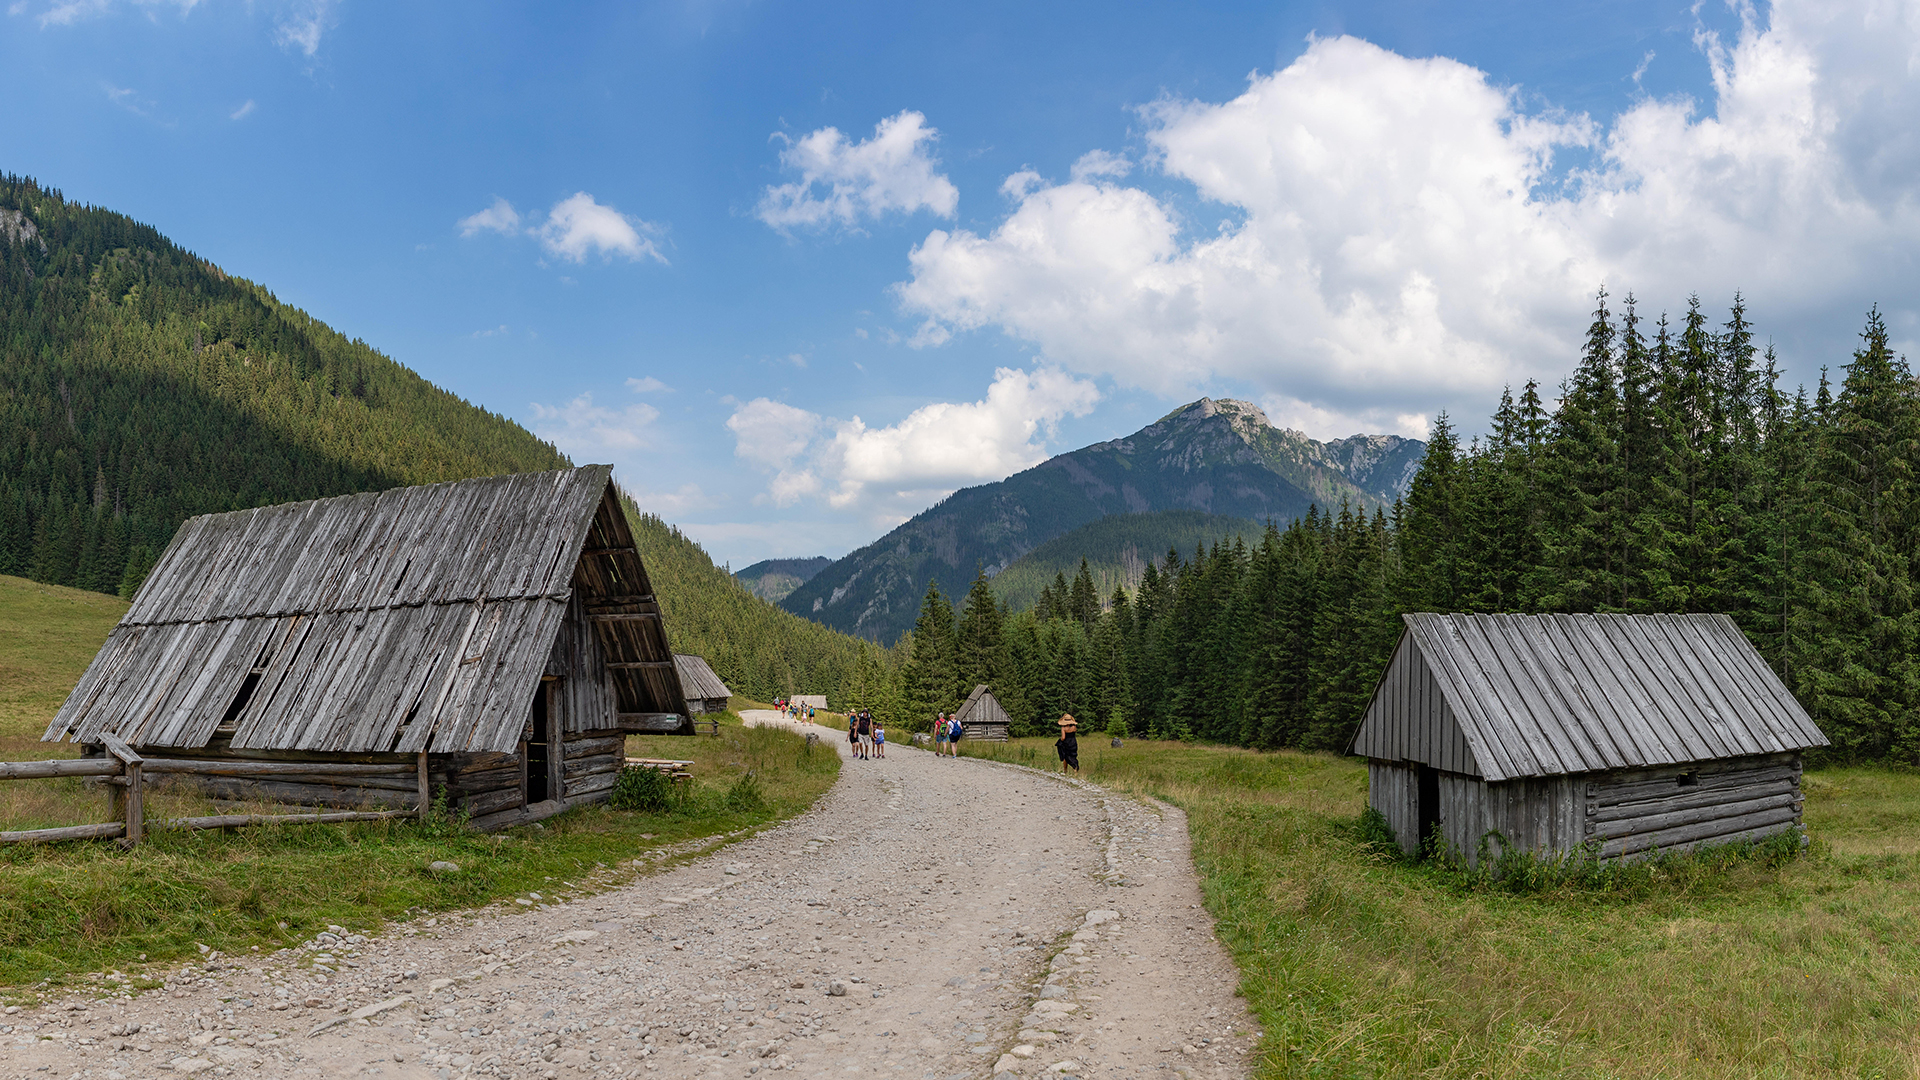 Blick auf die Tatra bei Zakopane | picture alliance / Zoonar